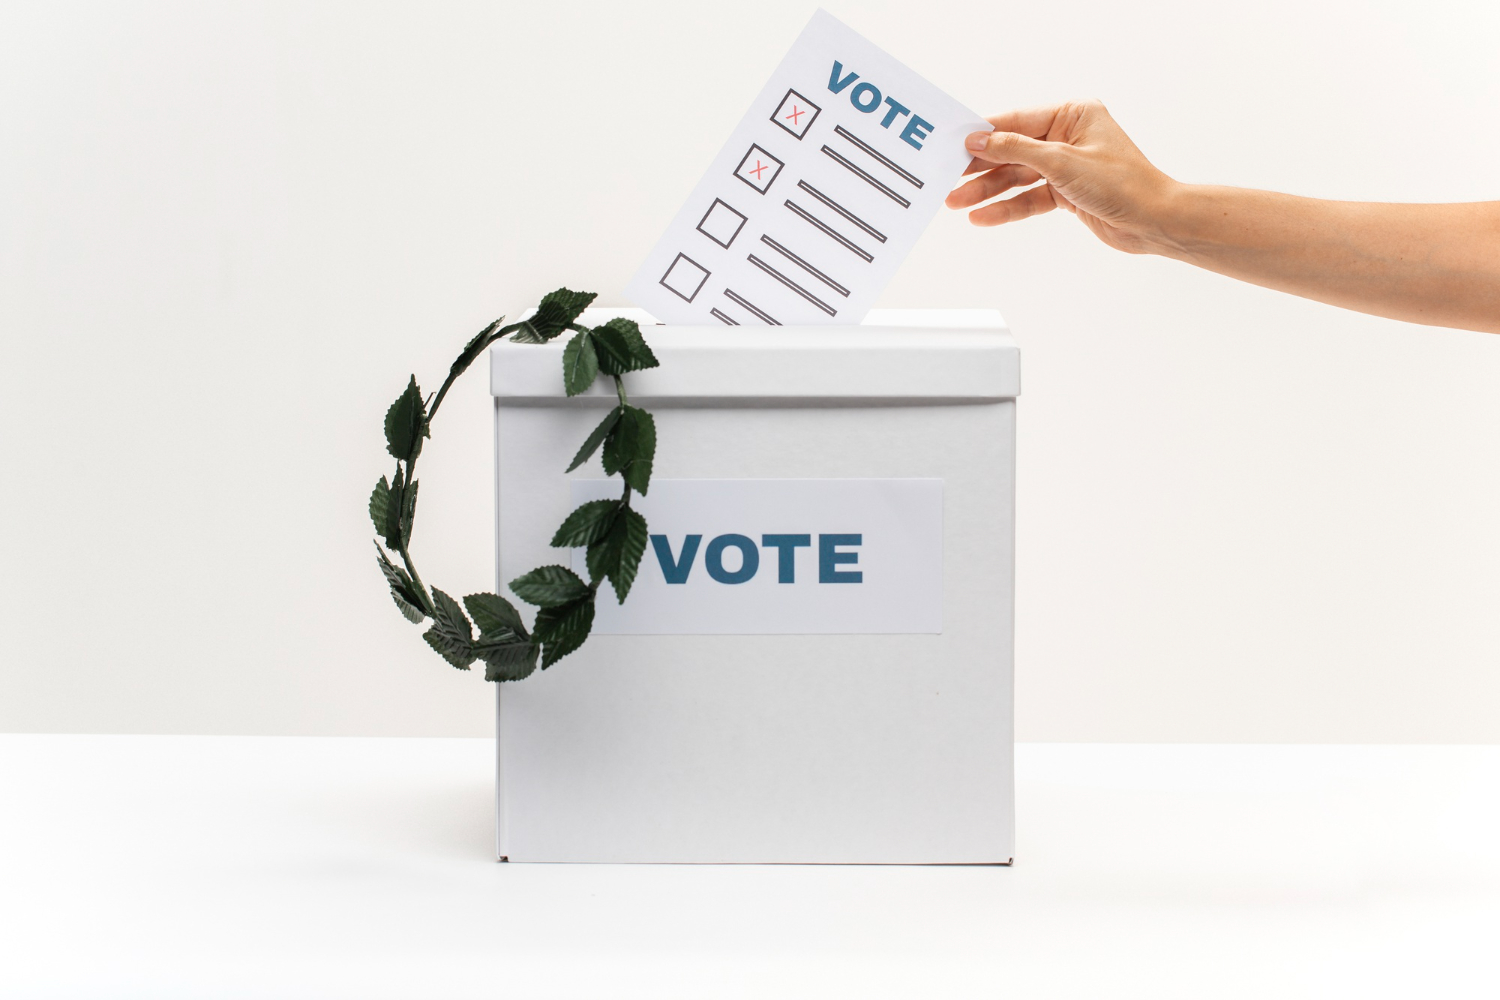 tangan seseorang sedang memasukkan kertas suara pemilihan ke dalam kotak suara